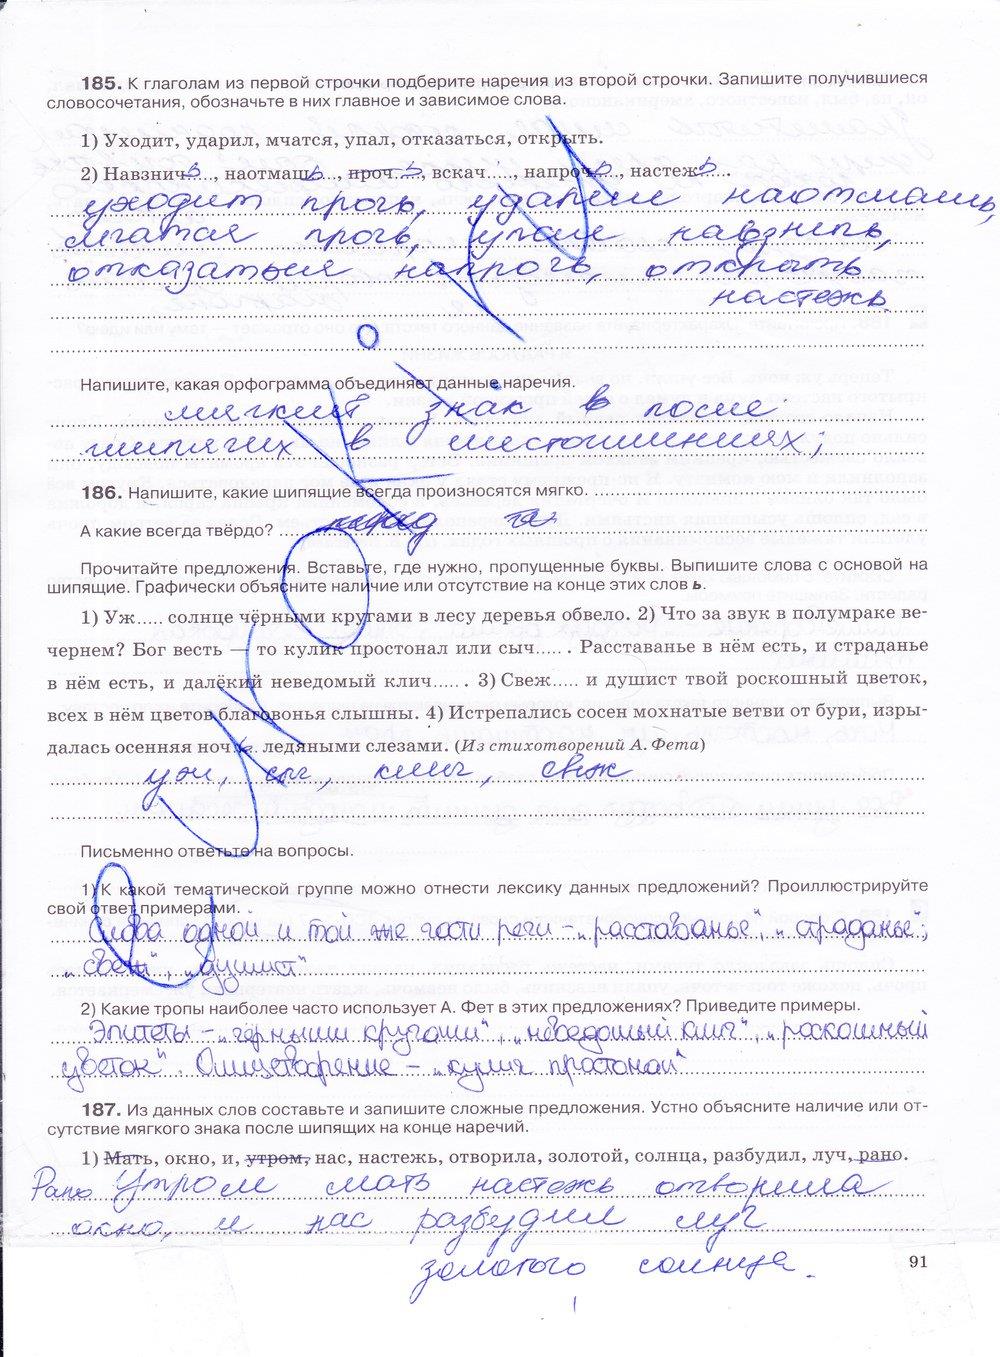 гдз 7 класс рабочая тетрадь страница 91 русский язык Ларионова